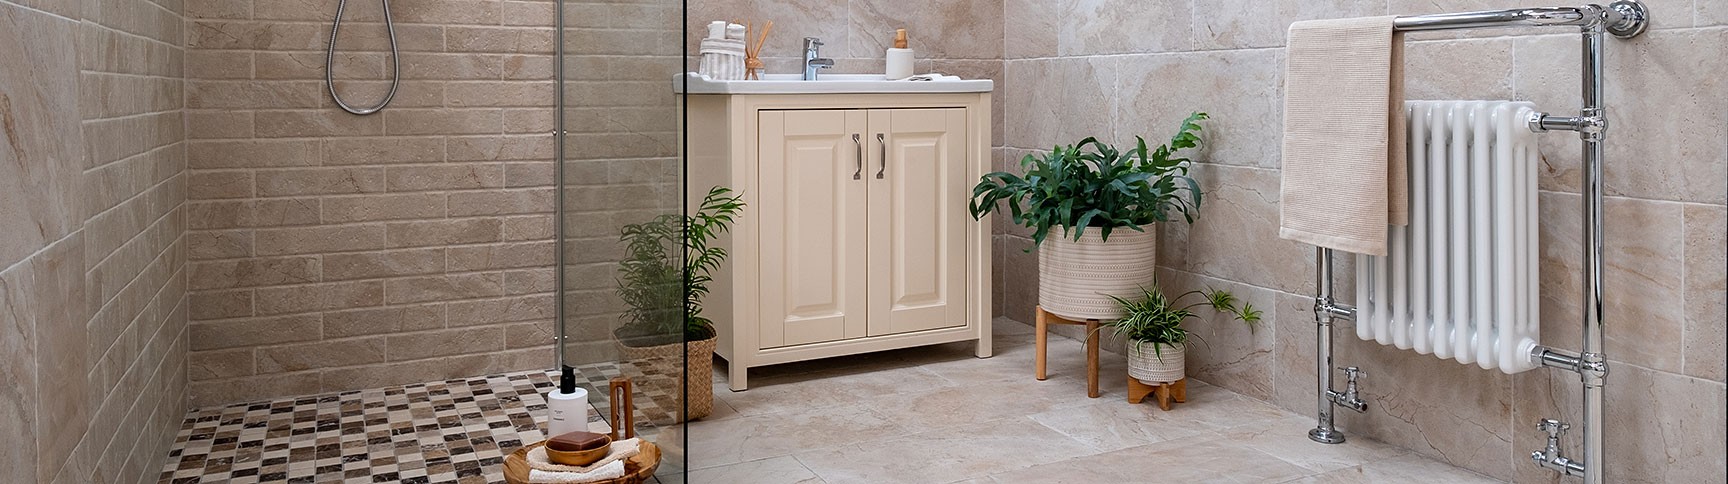 Bathroom Vanity & Storage Solutions | World of Tiles, Bathrooms & Wood Flooring